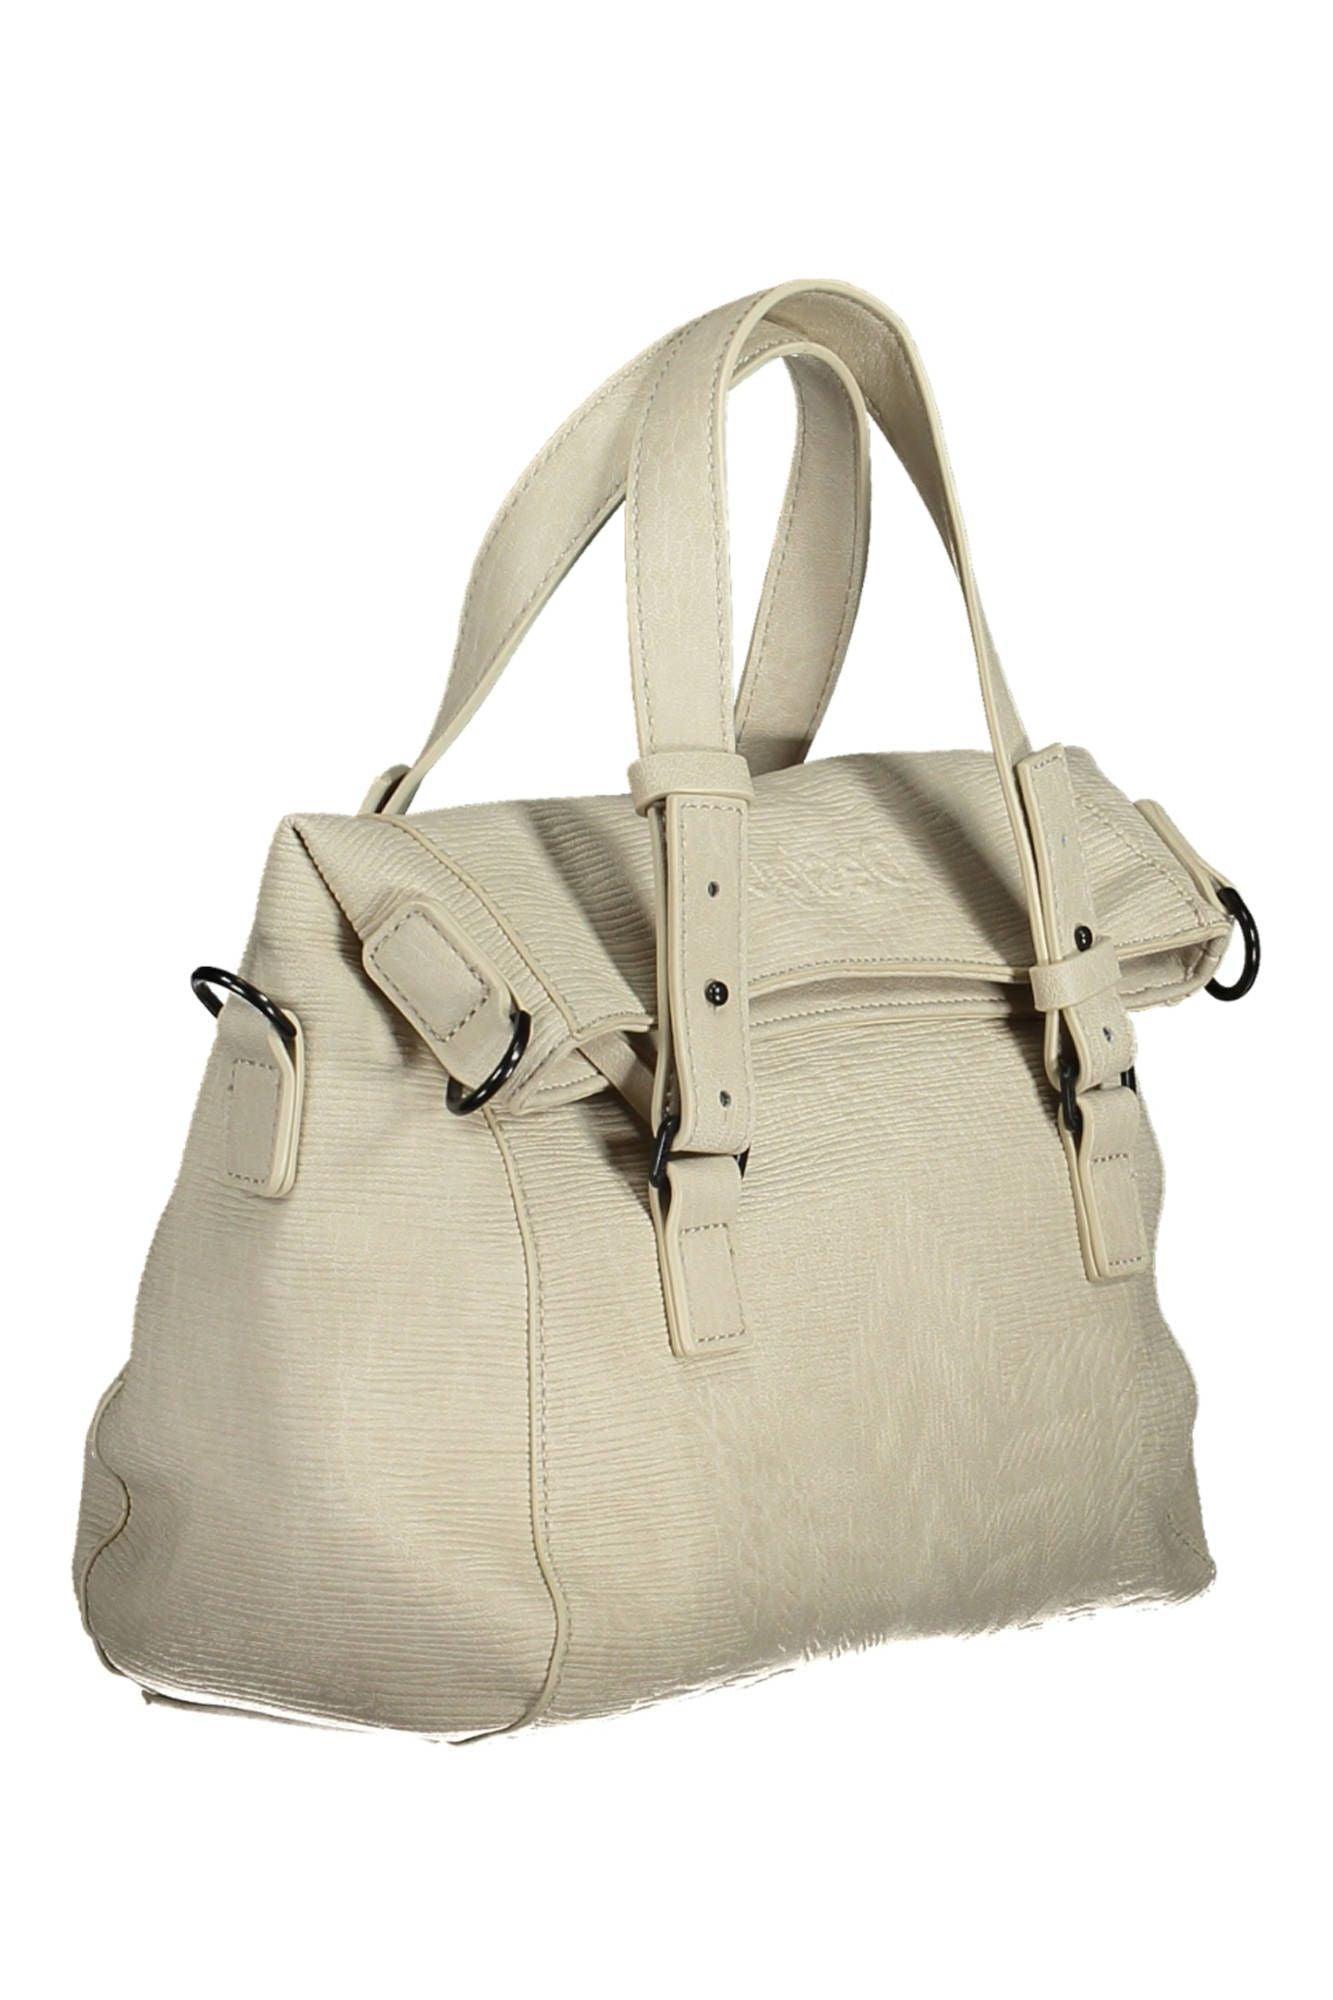 Desigual Chic White Contrasting Detail Handbag - PER.FASHION